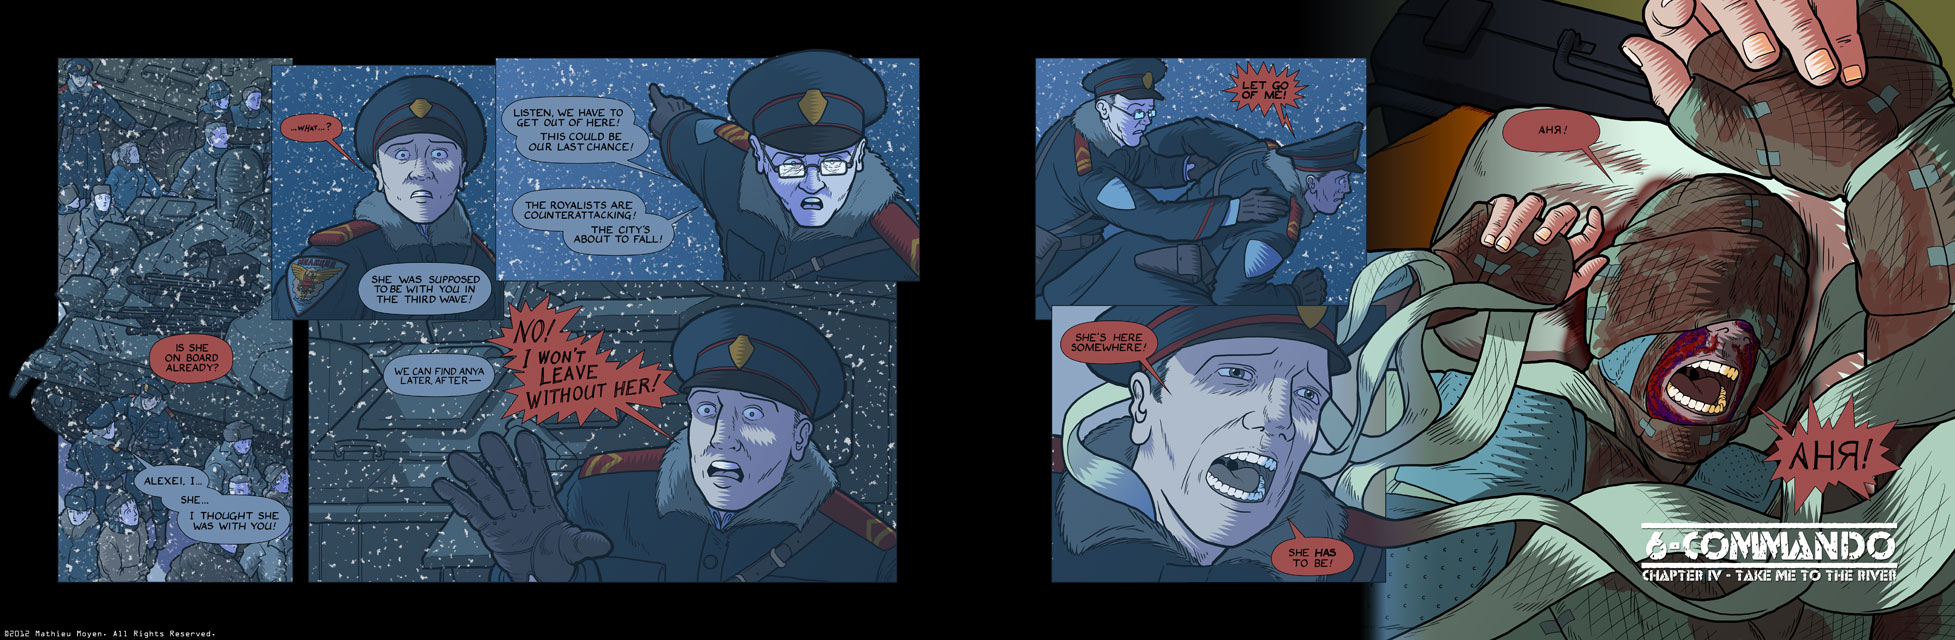 6-Commando Part 2, Pages 4-5